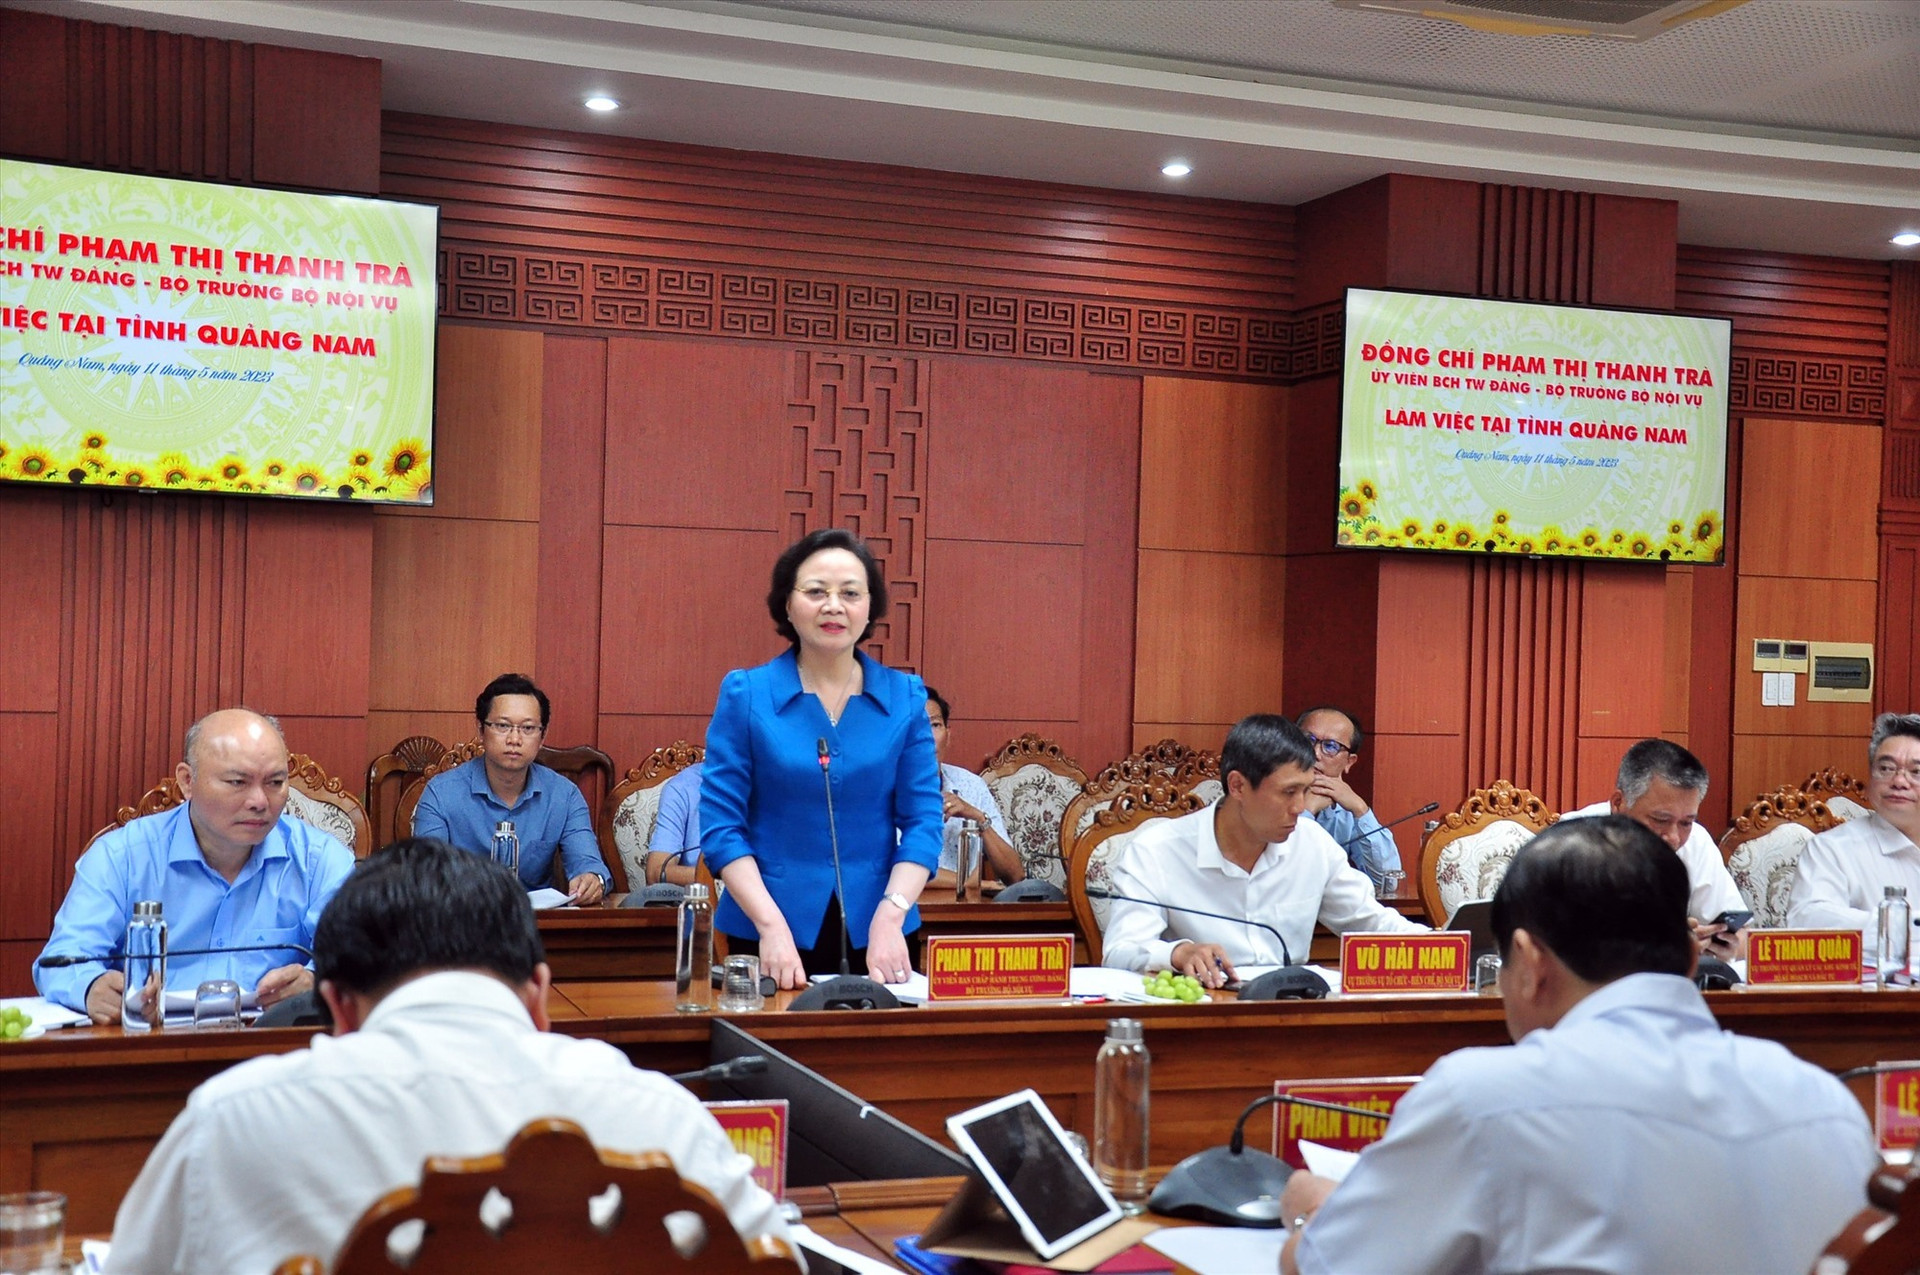 Bộ trưởng Bộ Nội vụ Phạm Thị Thanh Trà phát biểu tại buổi làm việc với lãnh đạo tỉnh Quảng Nam vào chiều 14/5. Ảnh: V.A